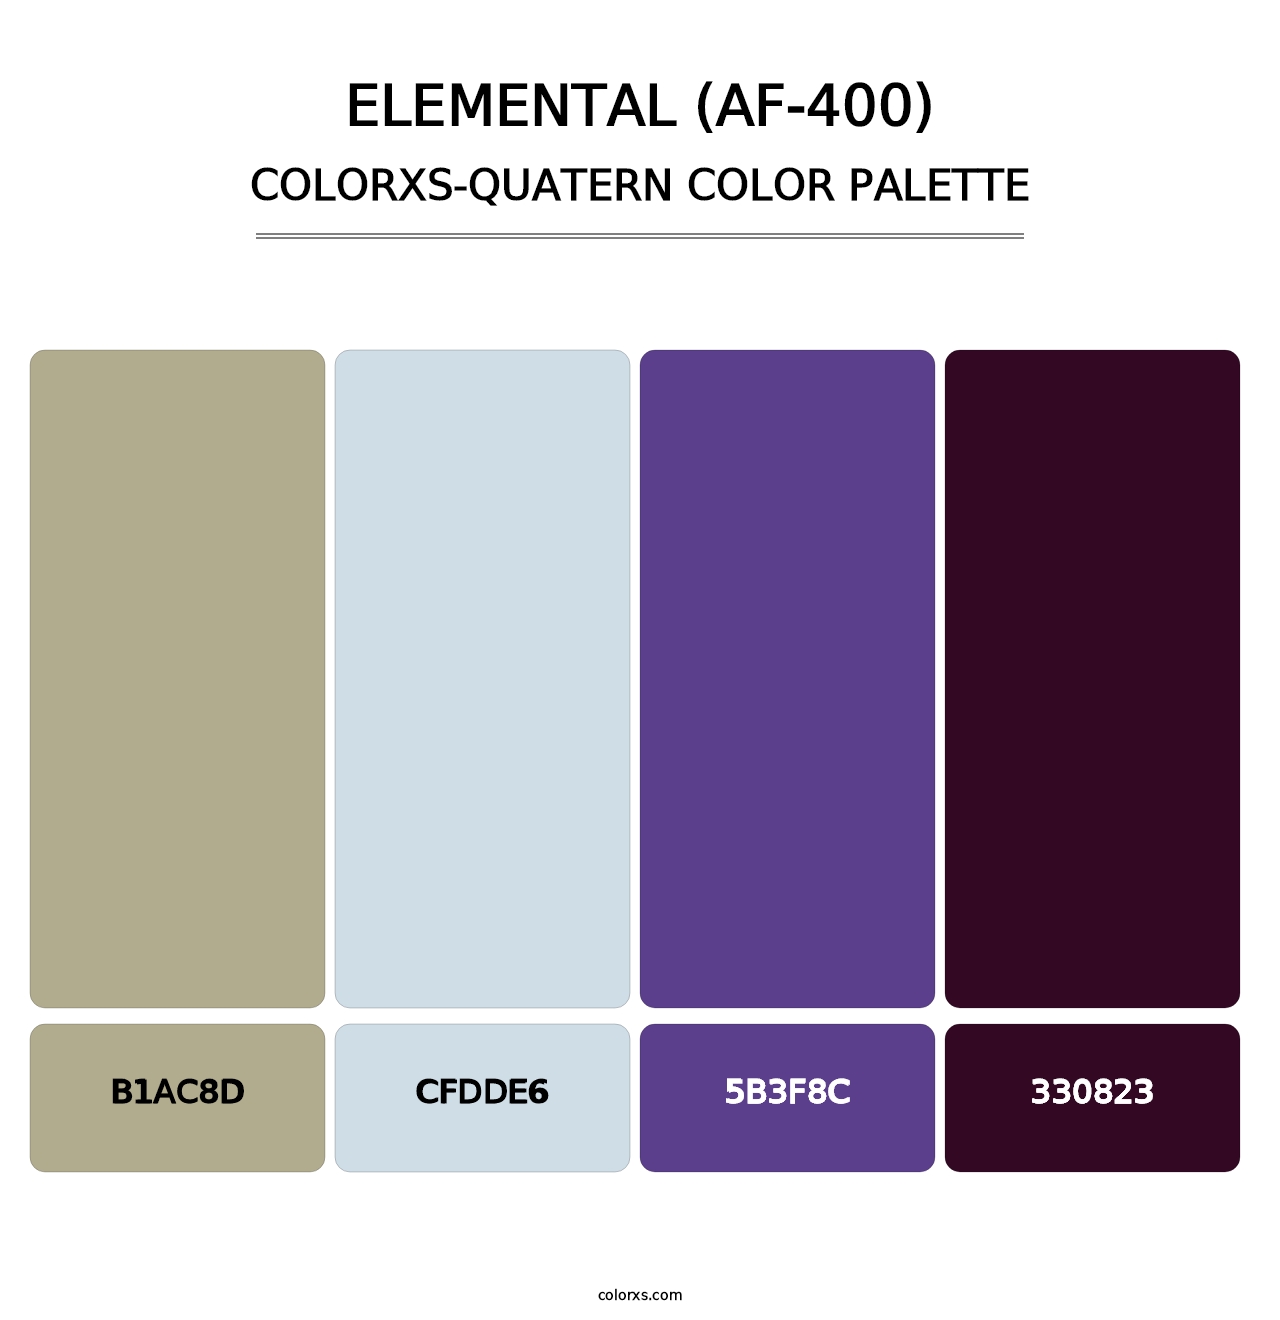 Elemental (AF-400) - Colorxs Quatern Palette